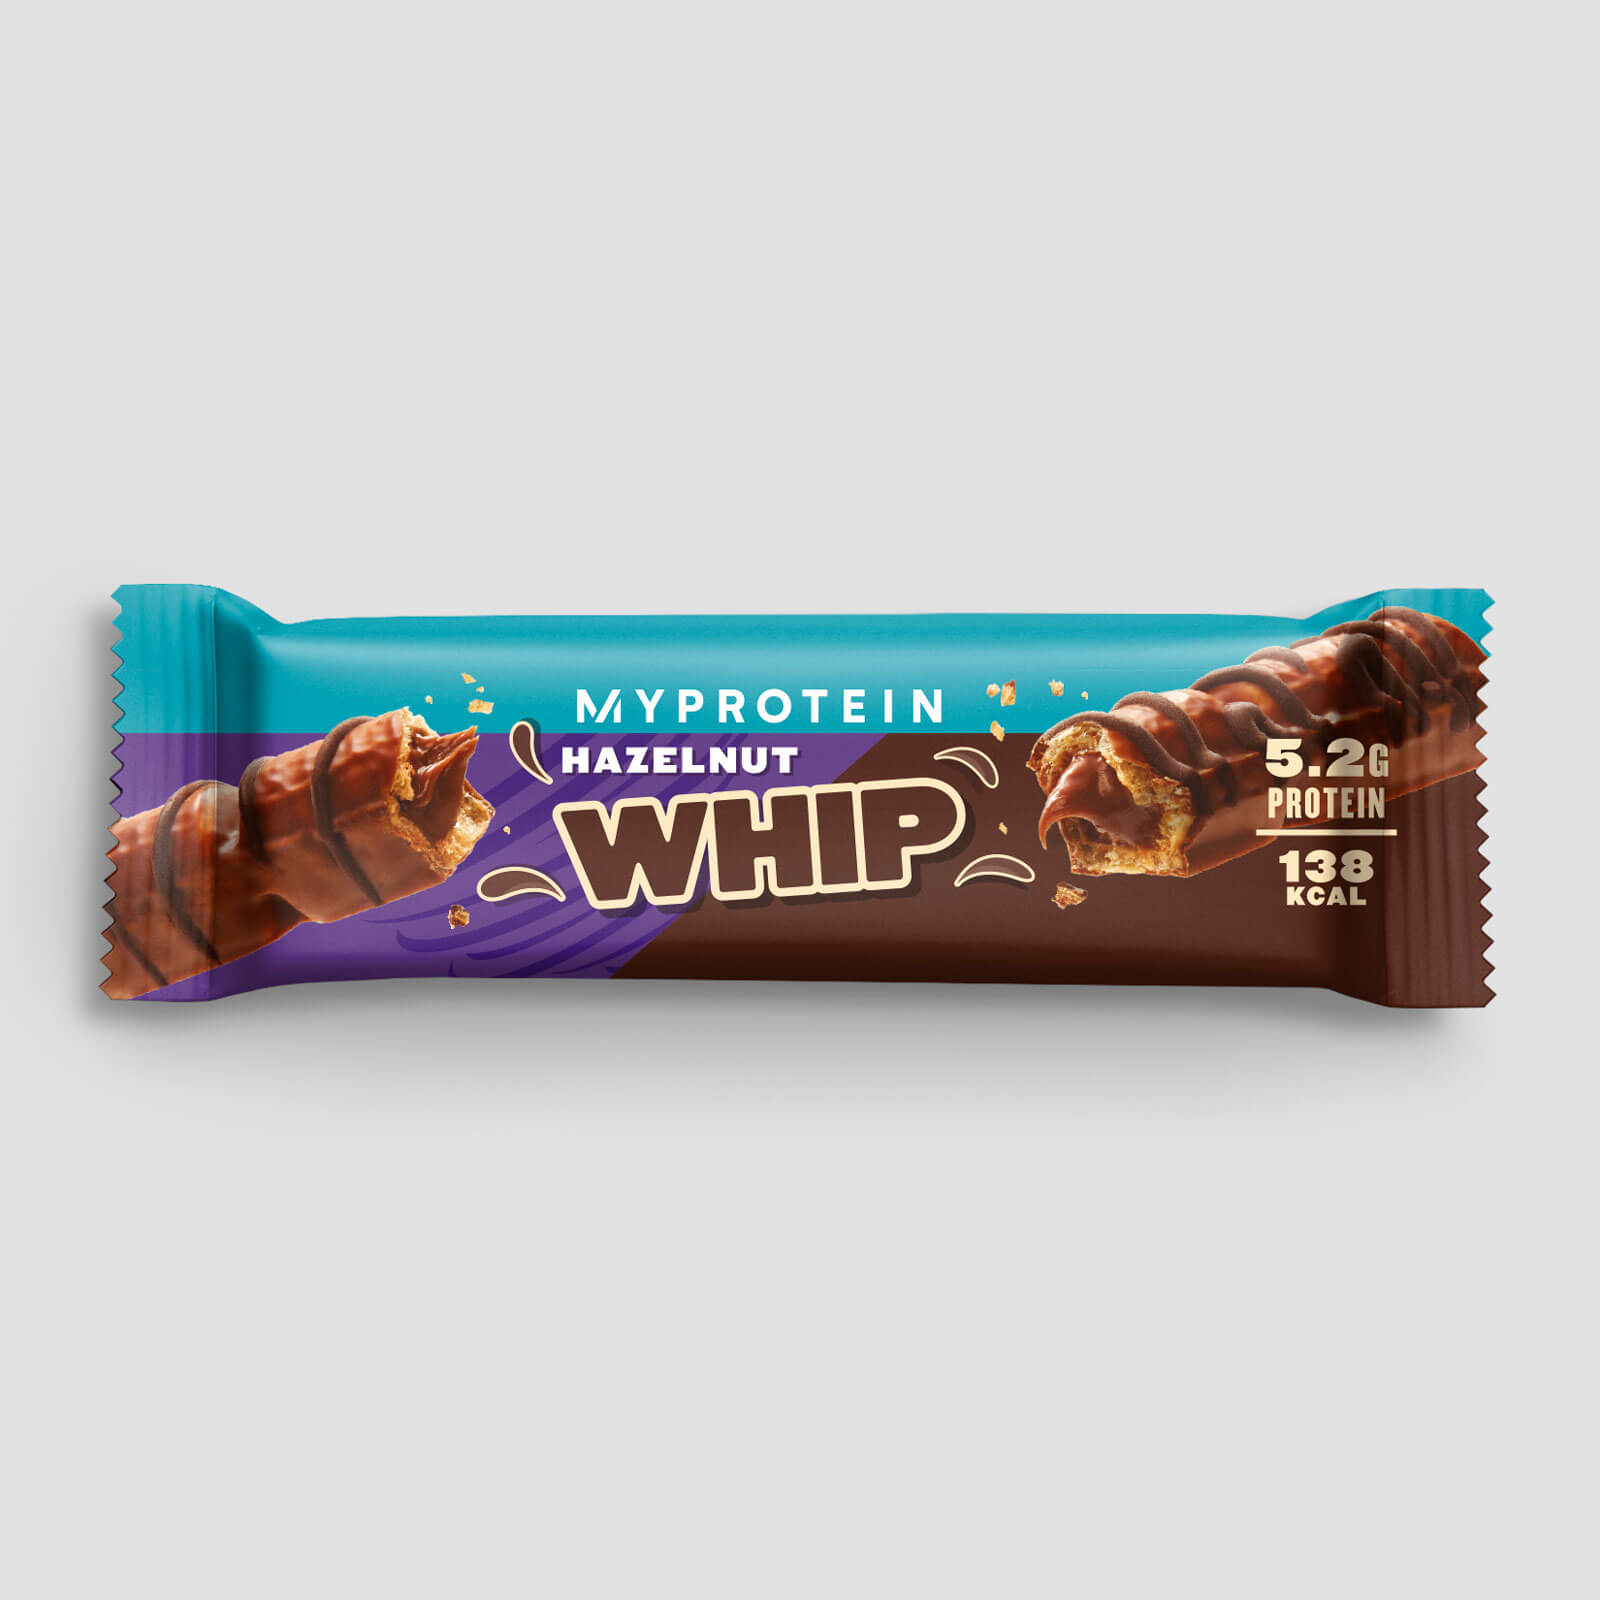 Myprotein Hazelnut Whip (Sample) - 24g - Chocolat au lait